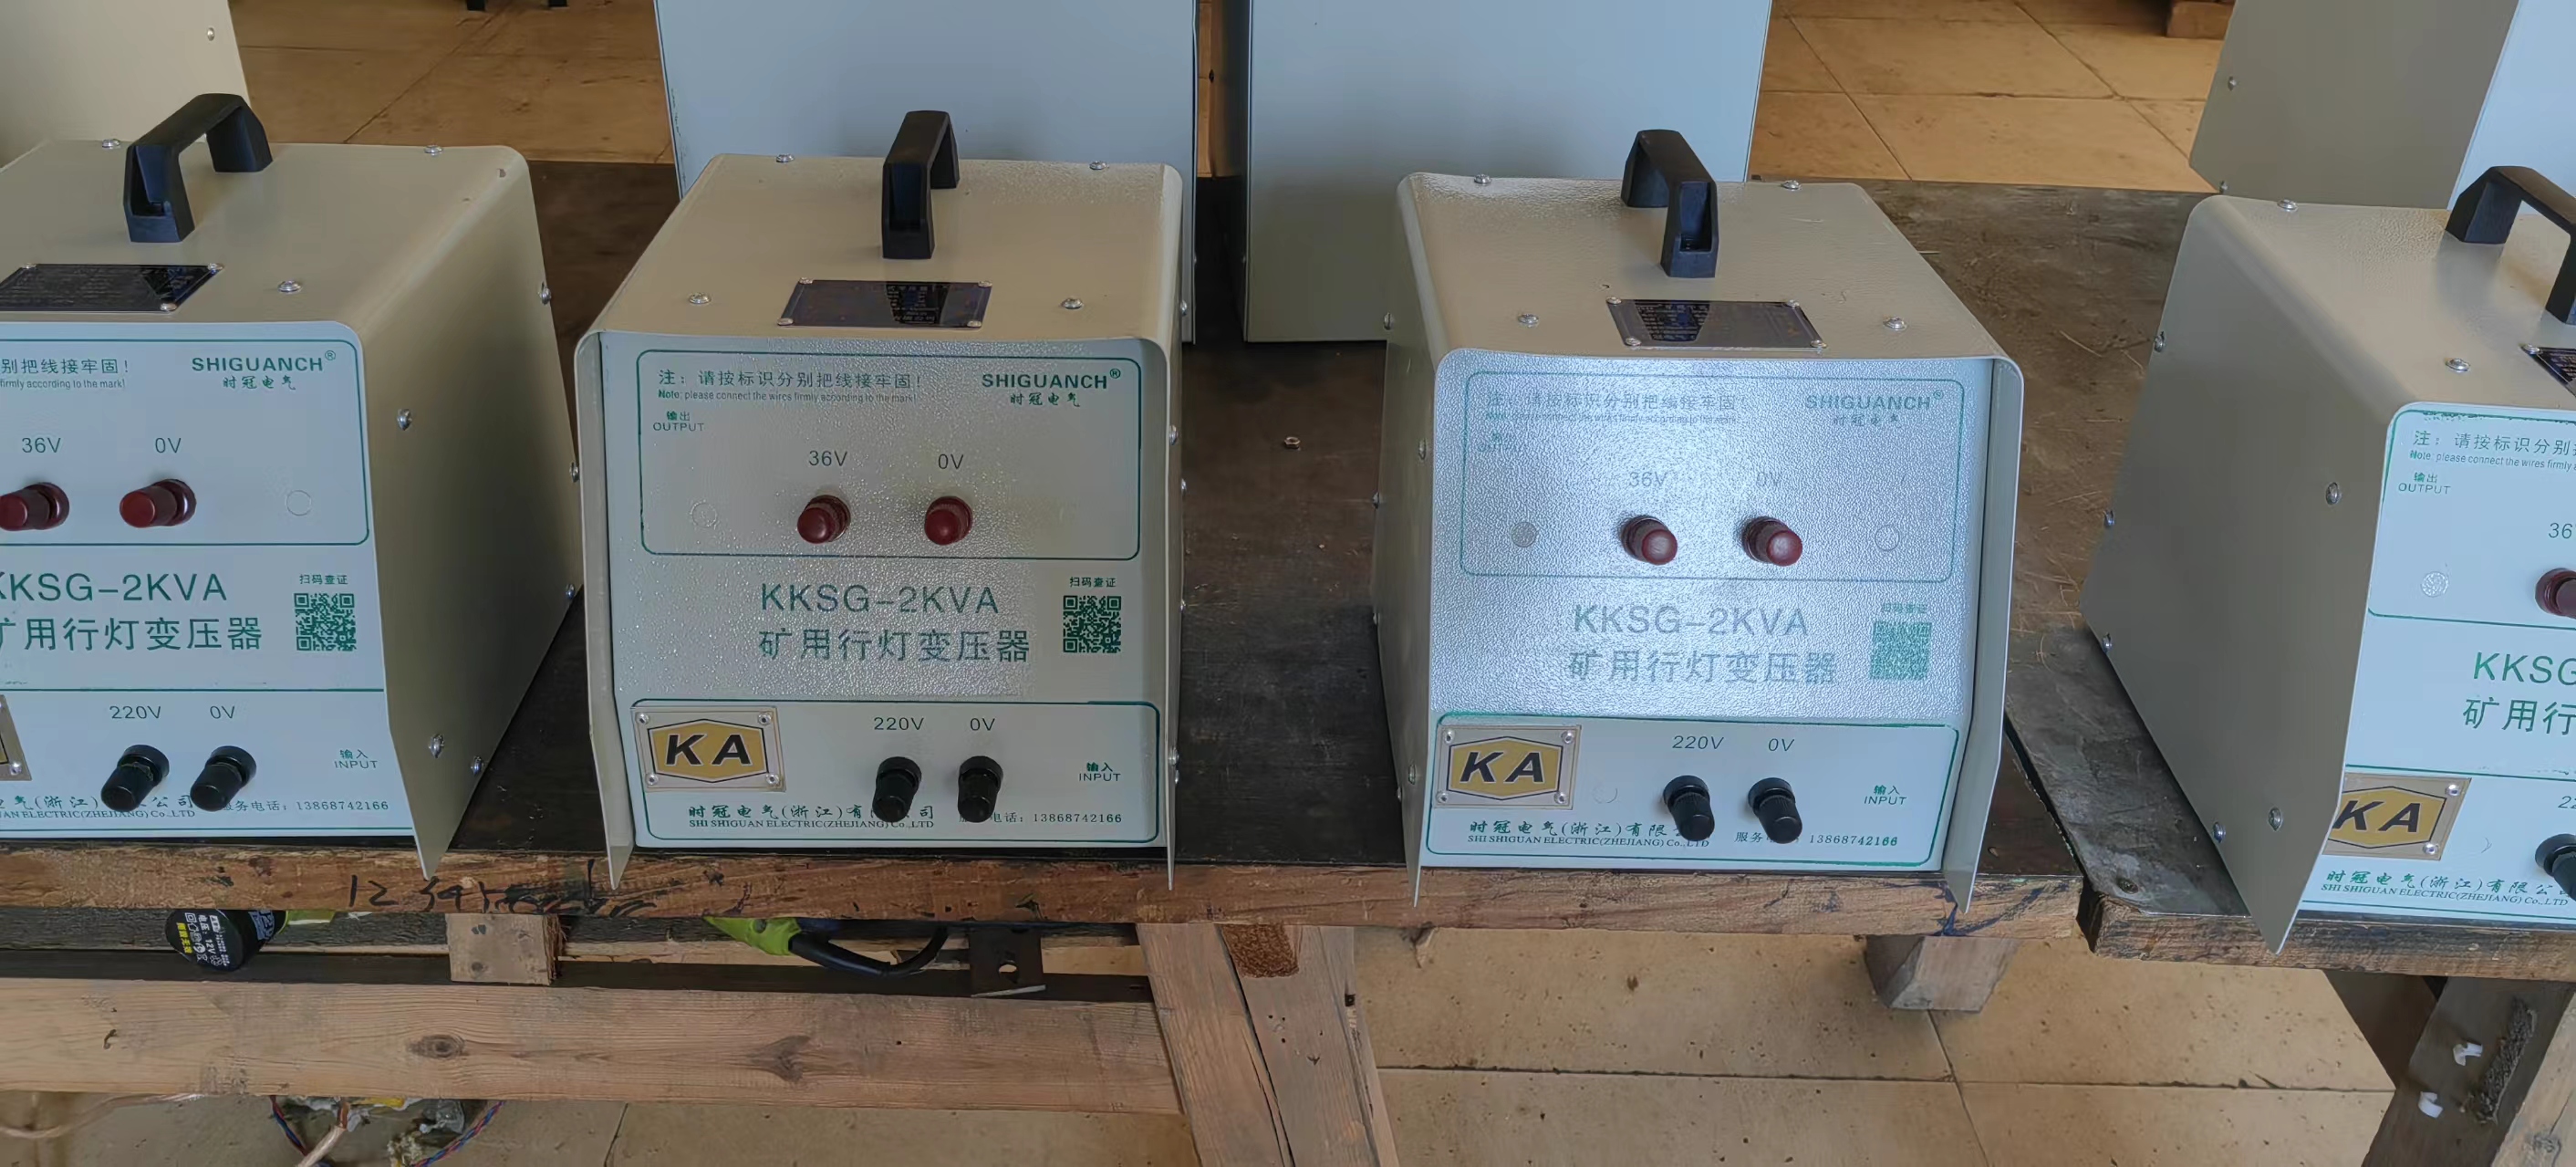 温州市KKSG-2KVA矿用行灯变压器厂家KKSG-2KVA矿用行灯变压器批发价-供应商-报价-价格-多少钱